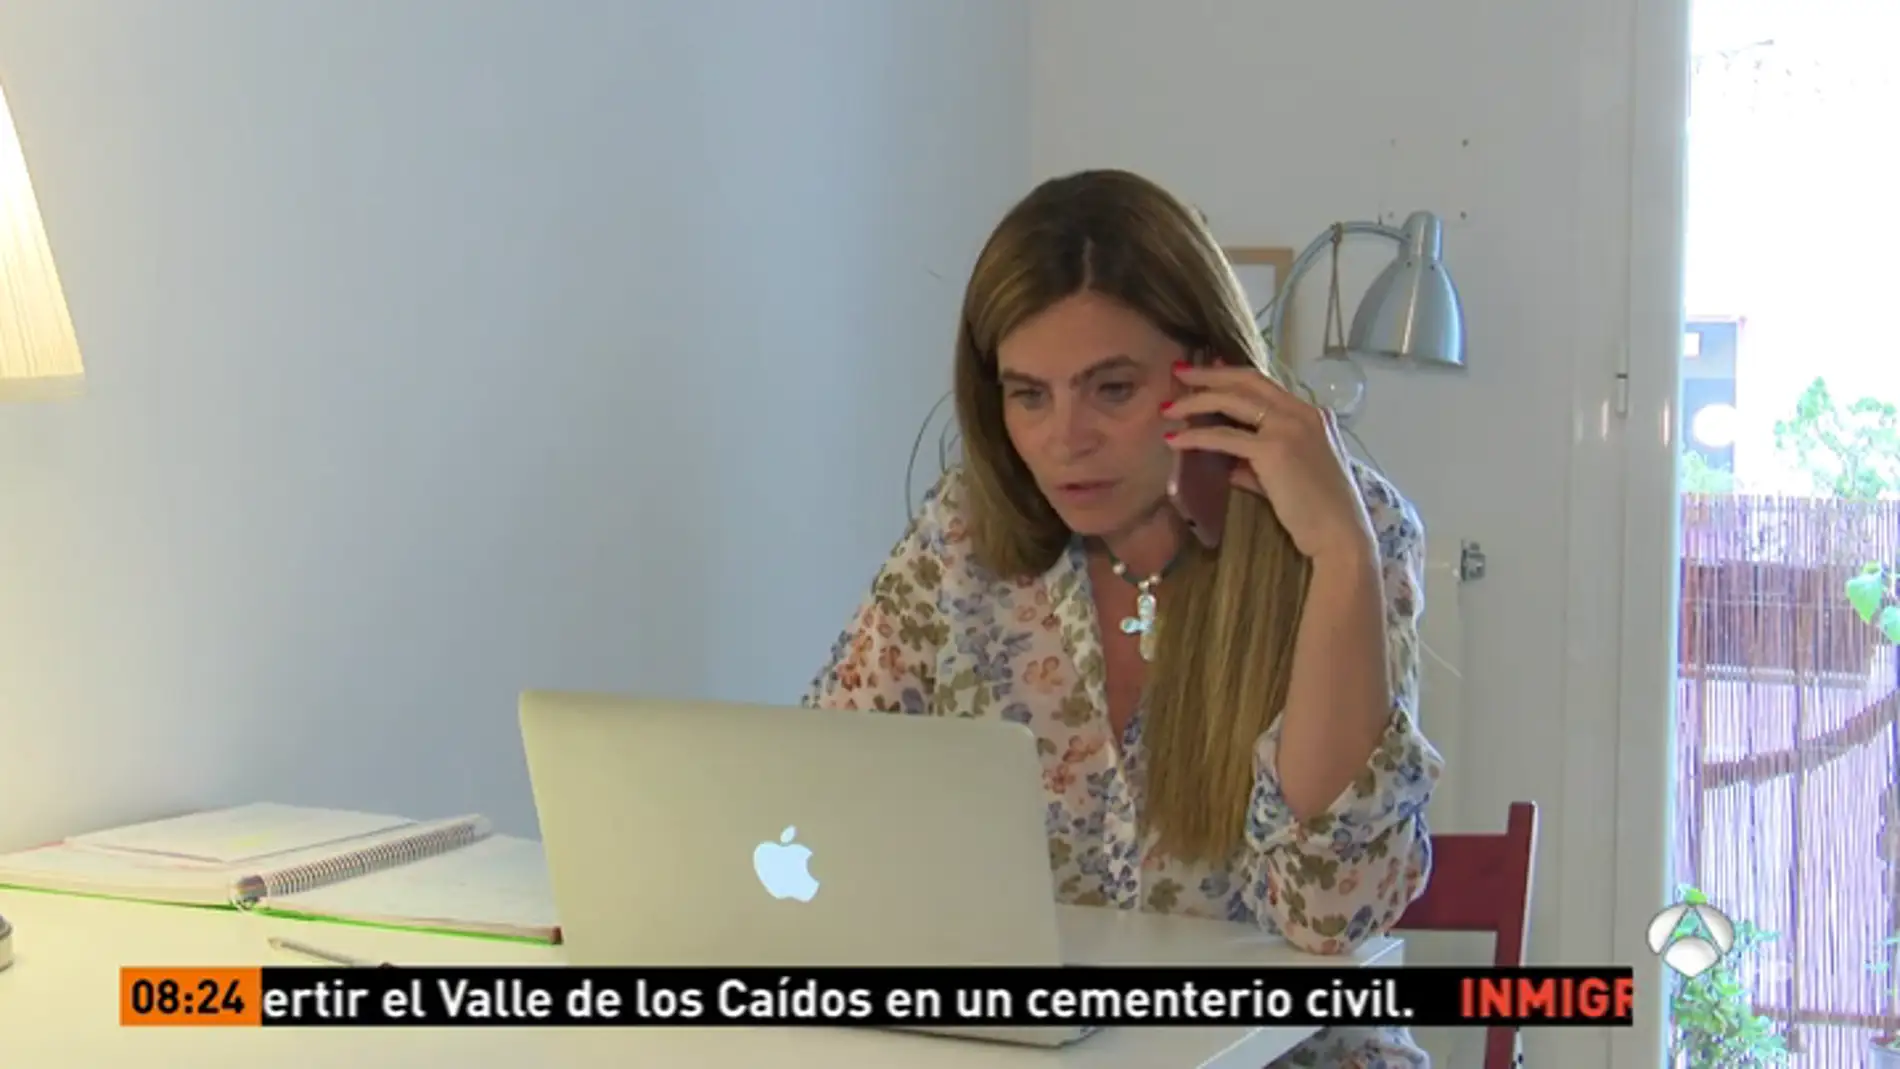 Aumenta el teletrabajo en España, un 8% de los trabajadores prefiere quedarse en casa